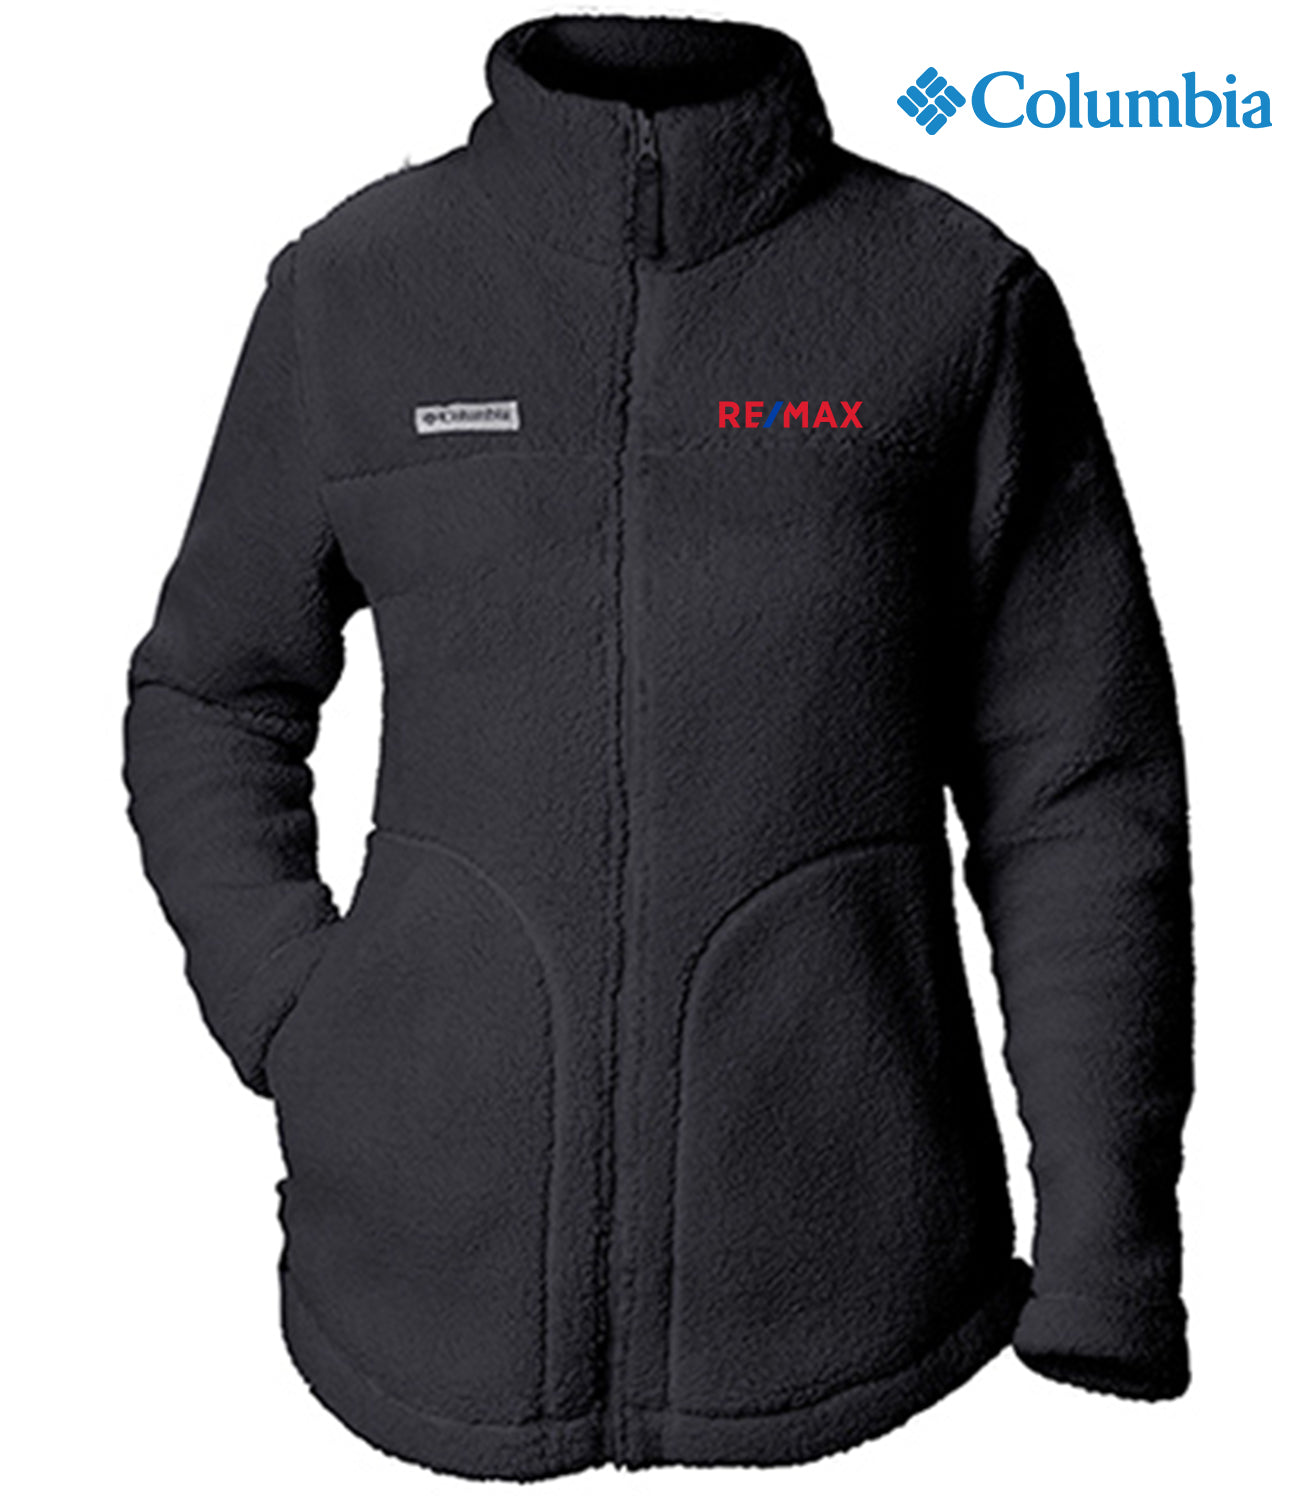 Columbia Women's West Bend™ Full Zip Fleece Jacket